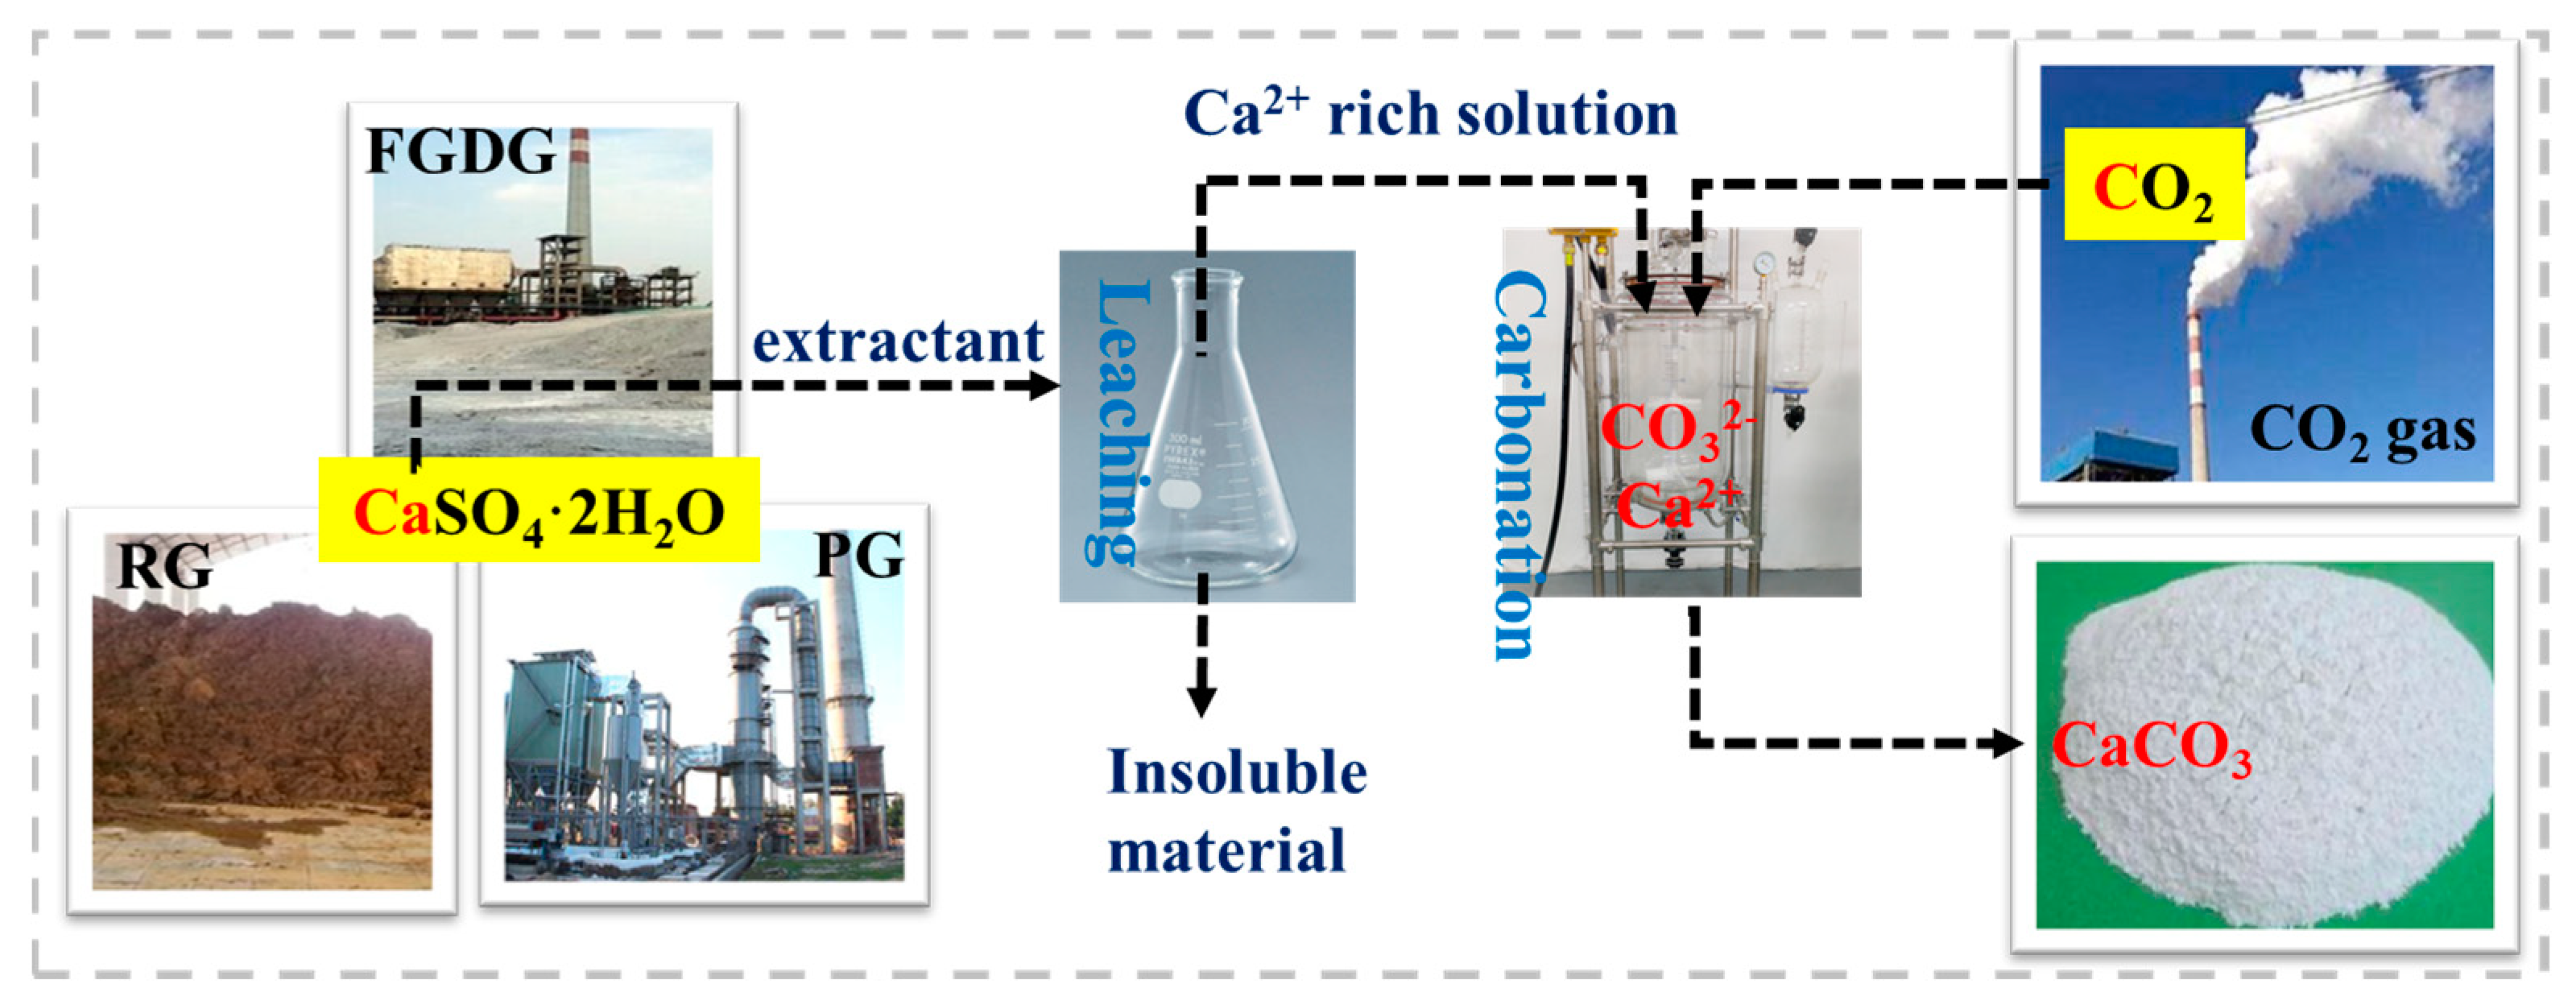 What is CALCIUM CARBONATE caco3 and CALCIUM CARBONATE processing